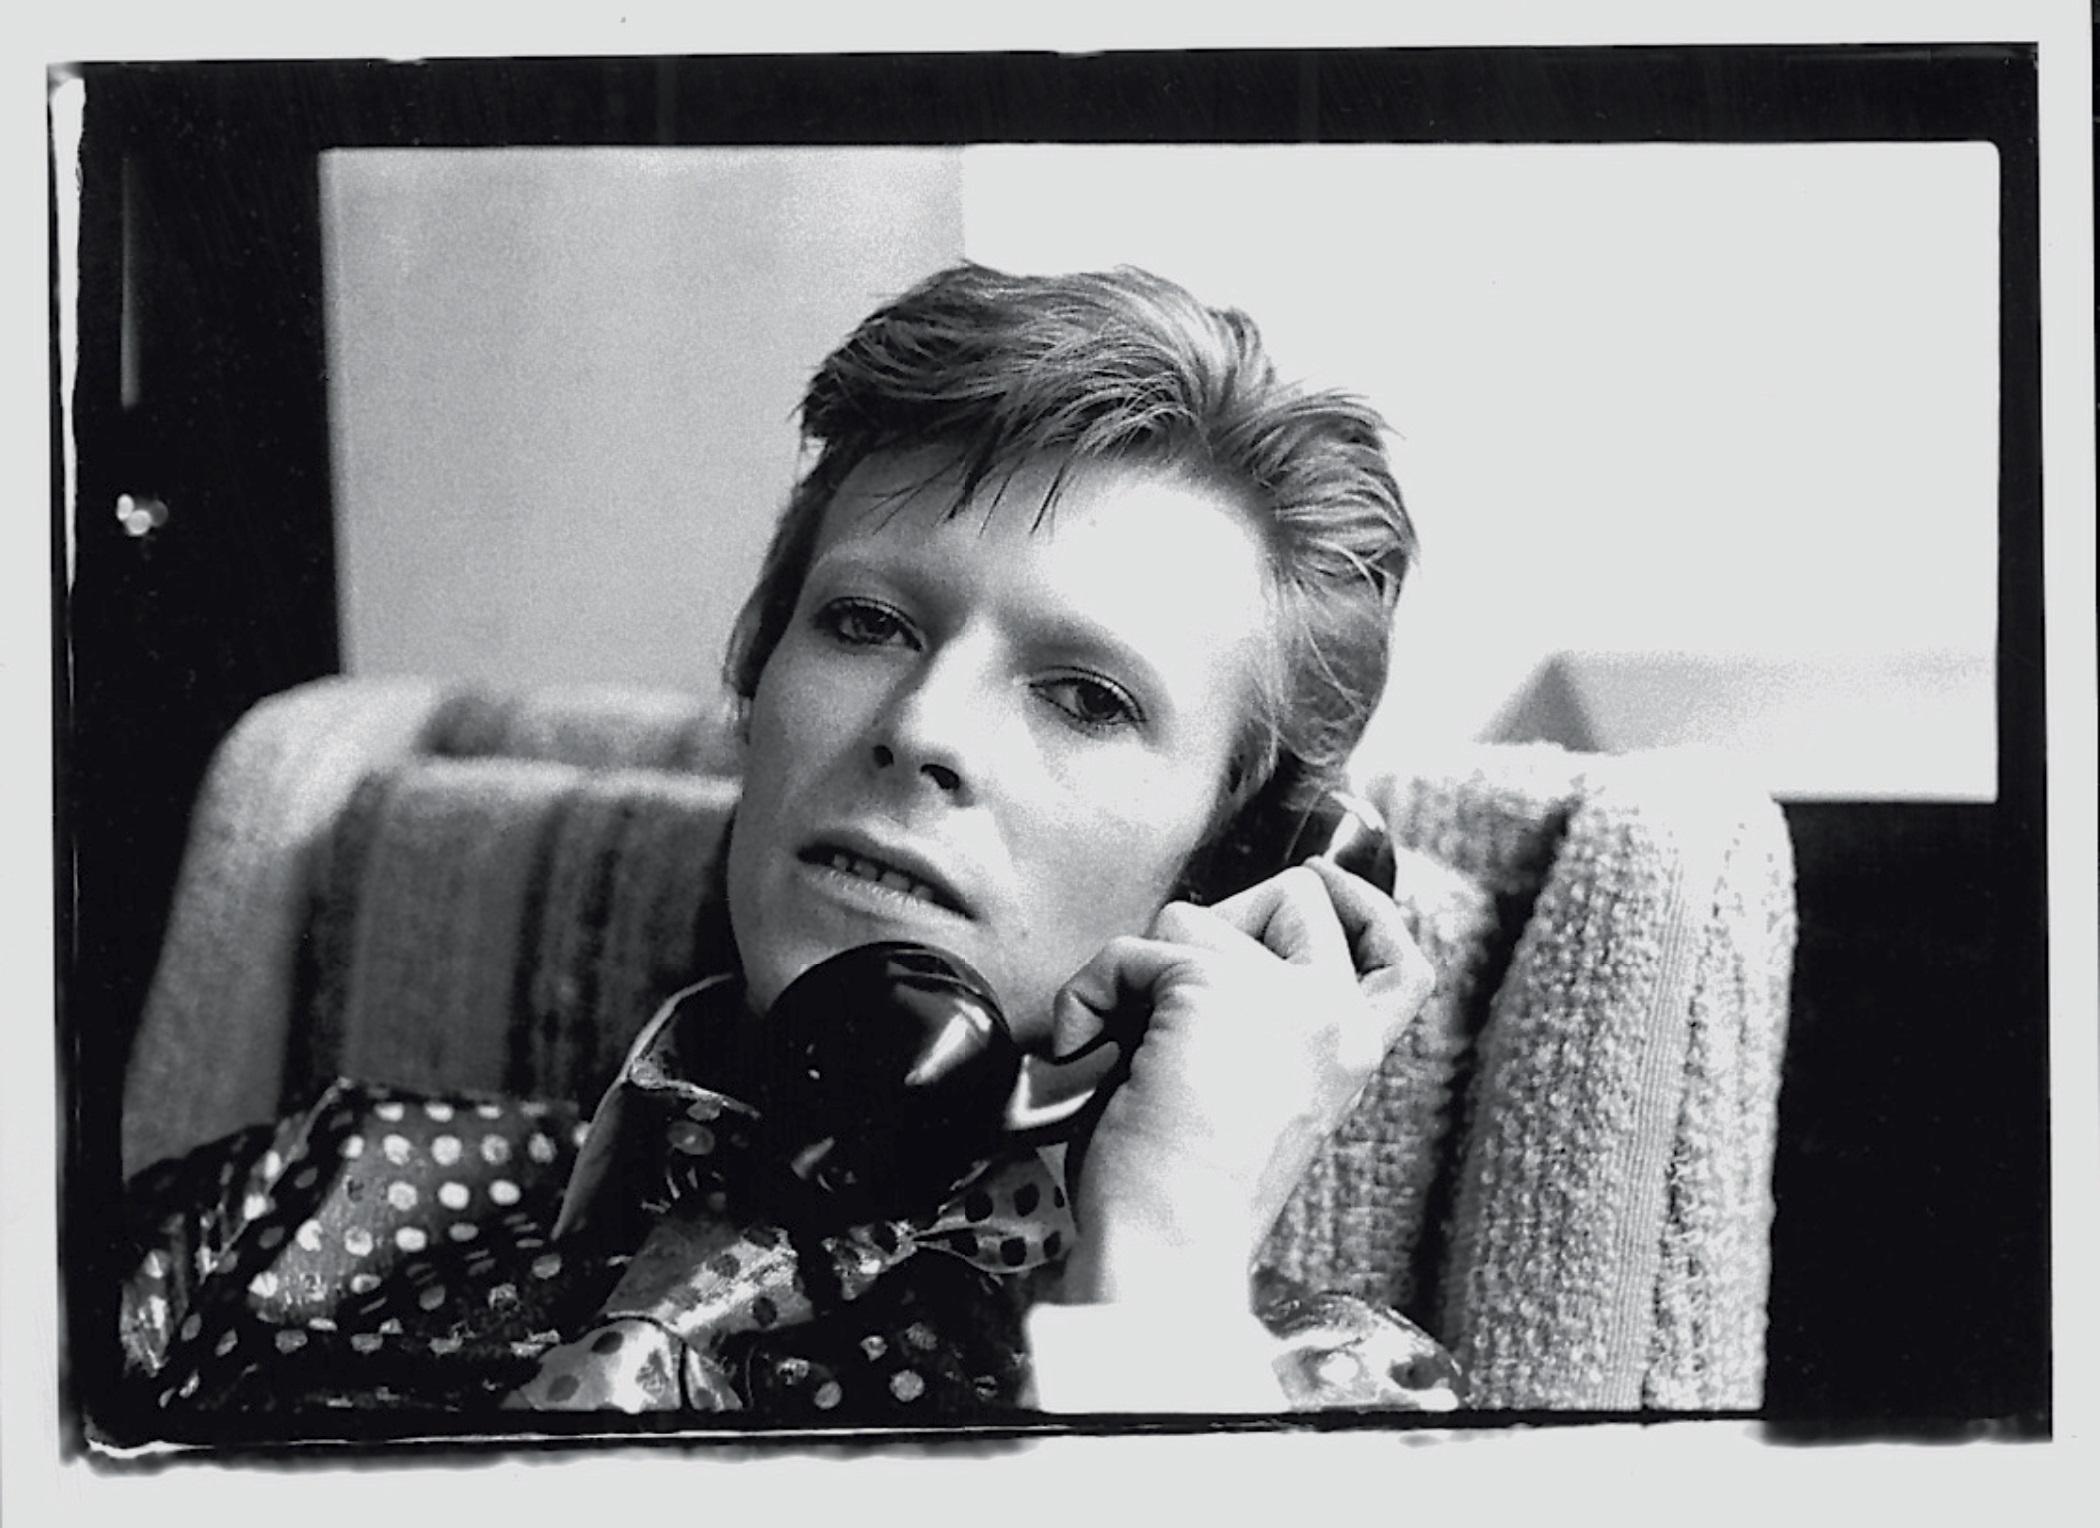 Bowie On The Phone (Bowie sur le téléphone) - tirage limité signé 

David Bowie parlant au téléphone, 1973. (photo Mick Rock)

Dimensions du papier : 61 x 51 cm

Estampillée et numérotée par la succession.

Impression pigmentaire